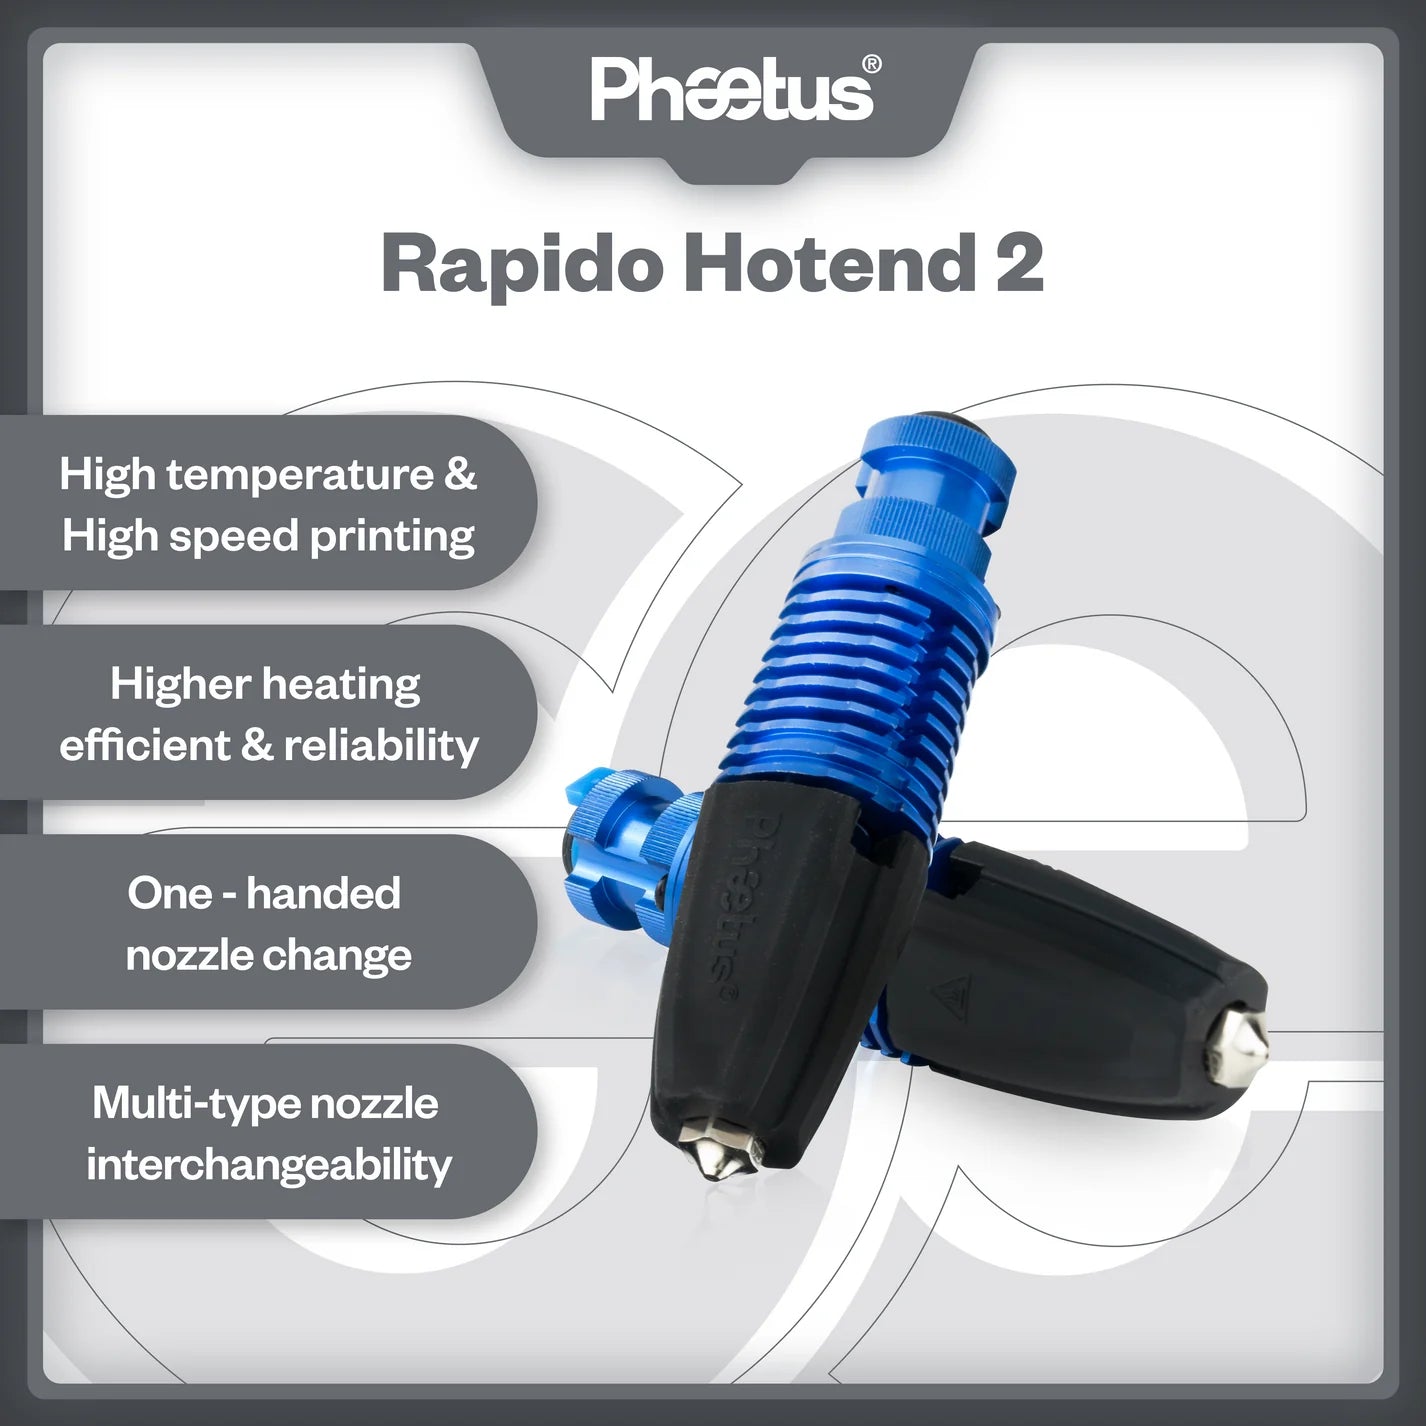 Phaetus Rapido Hotend 2 (280 Degree Heater core)